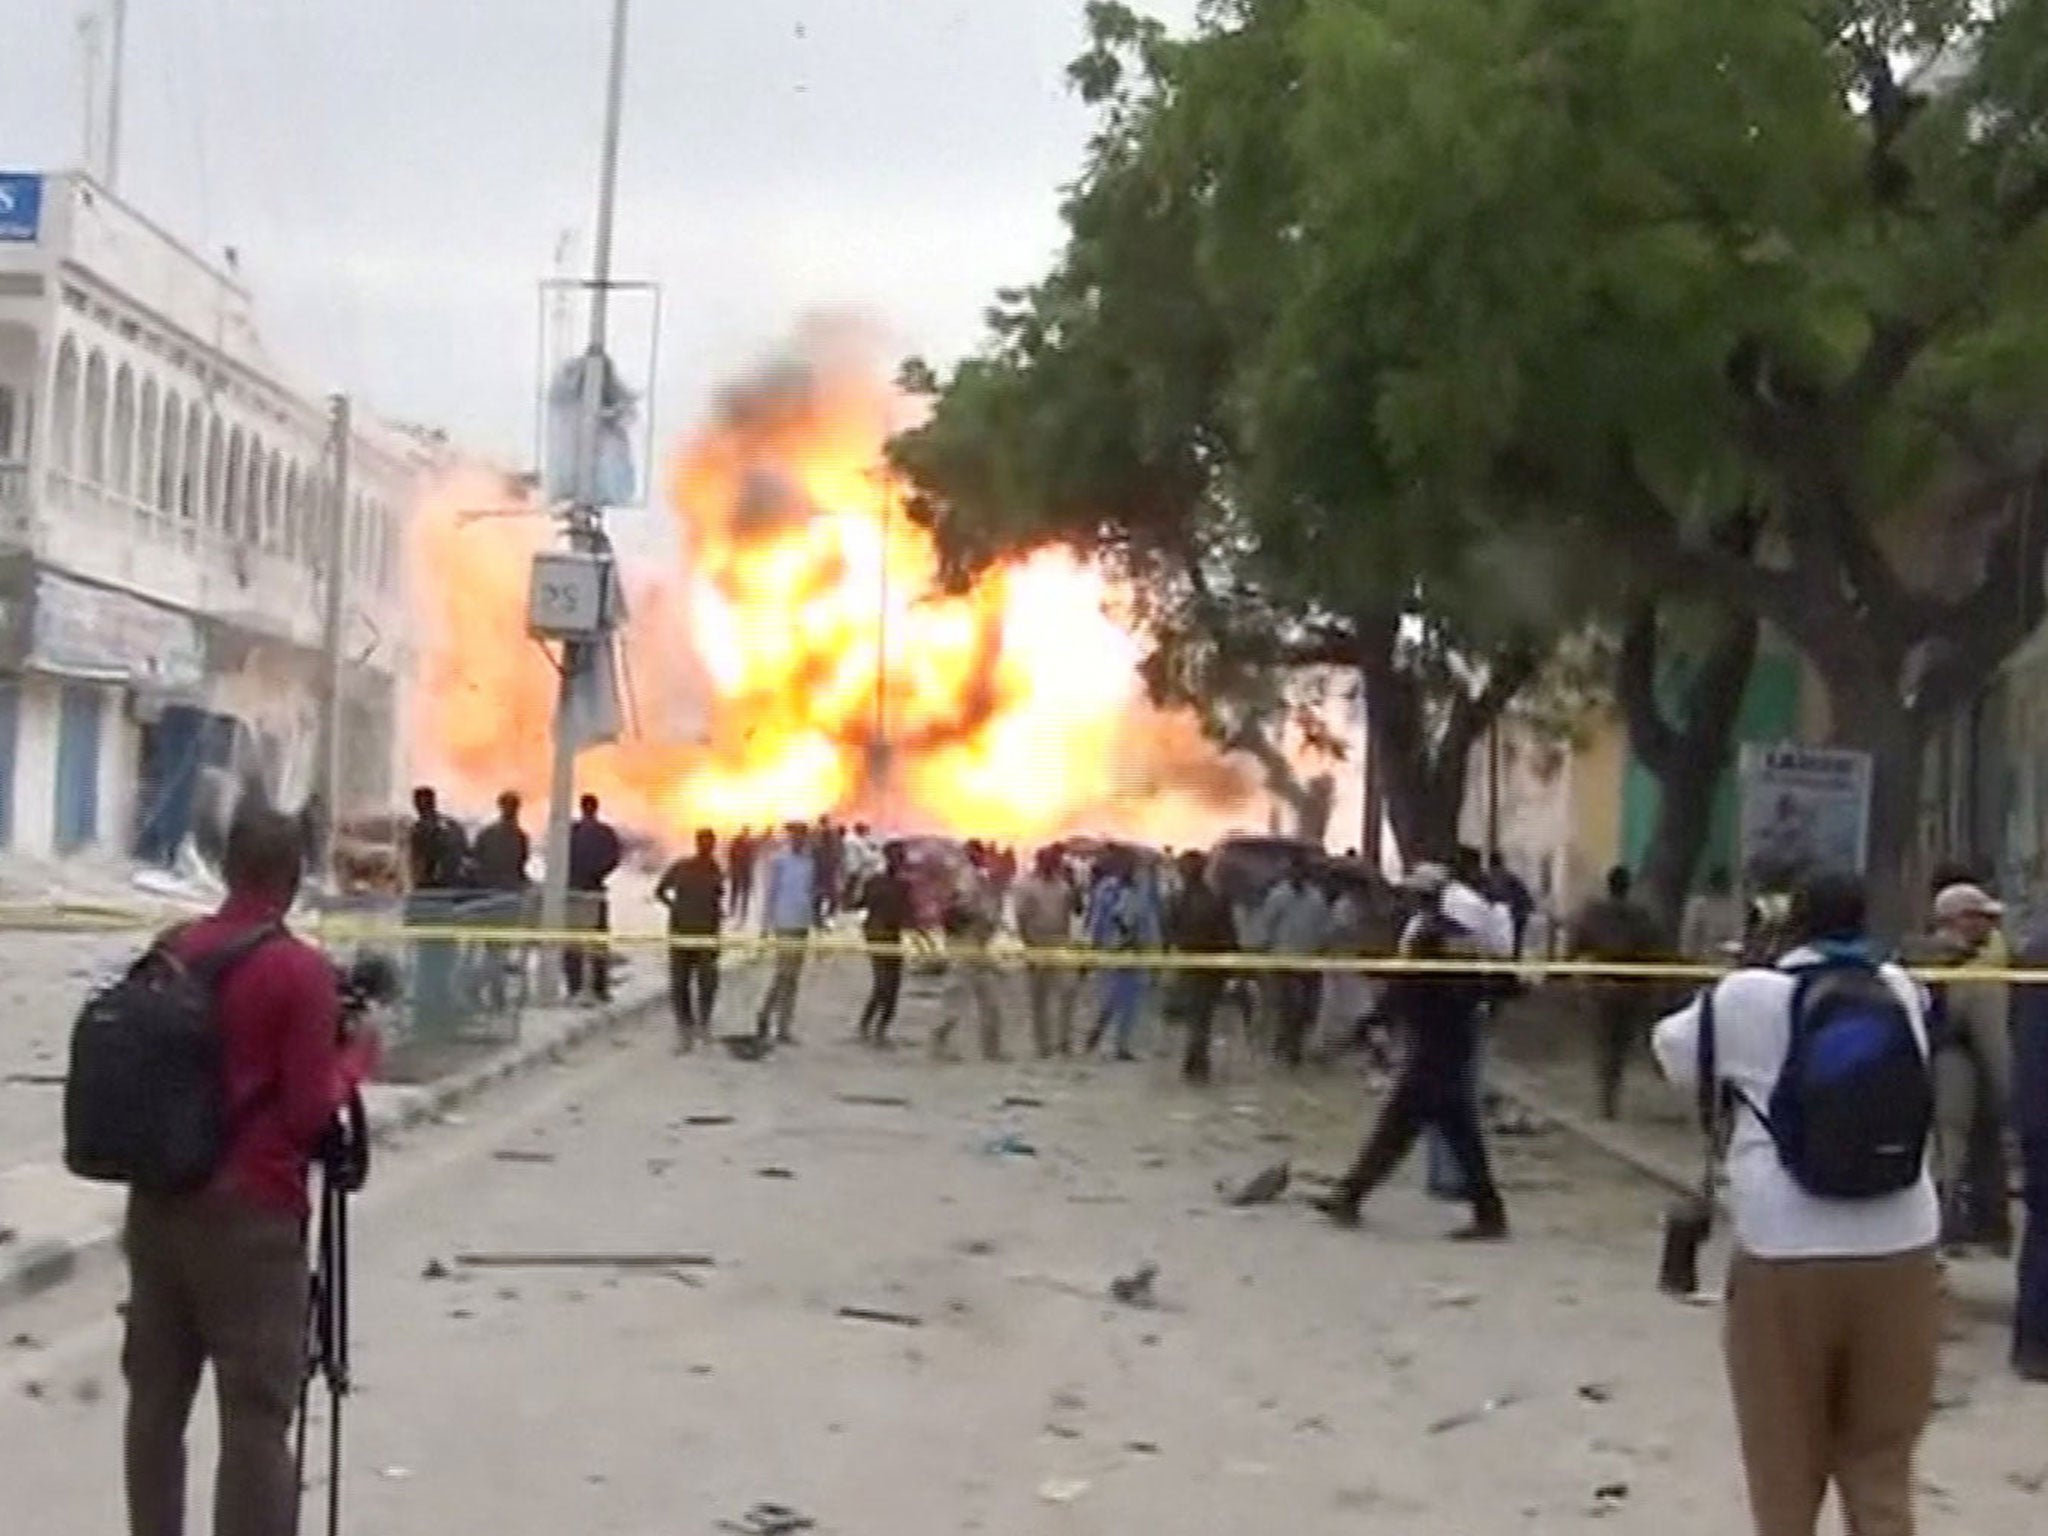 Теракт в могадишо отель. Нападение террористов на отель. Взрывы зданий террористами. Стрельба в отеле Могадишо.